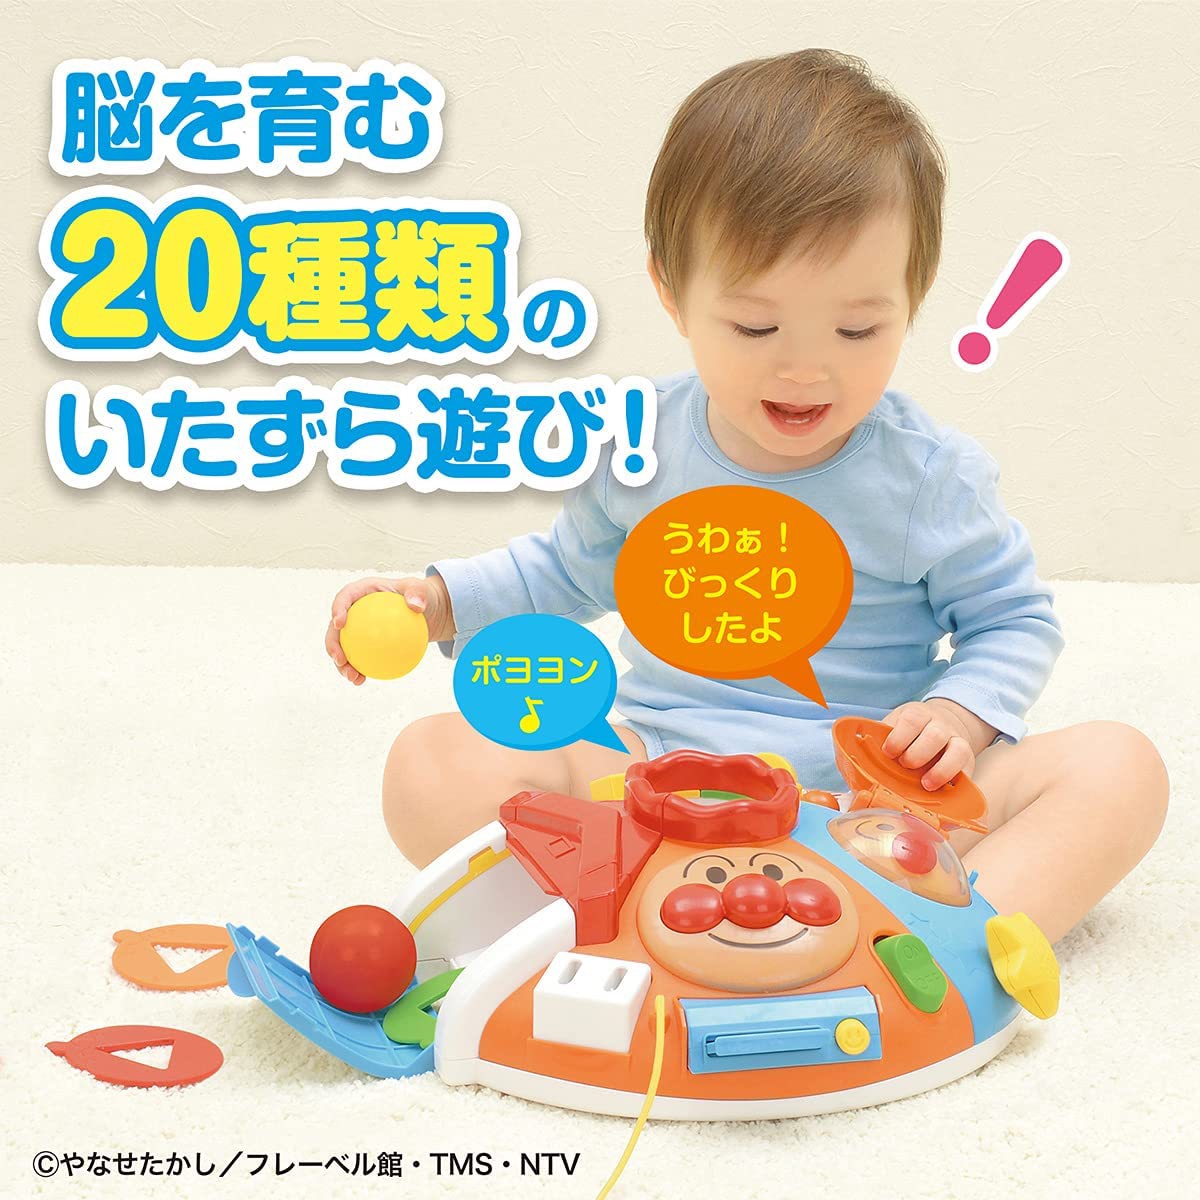 现货日本进口面包超人婴儿童多功能七面体学习台益智早教玩具周岁